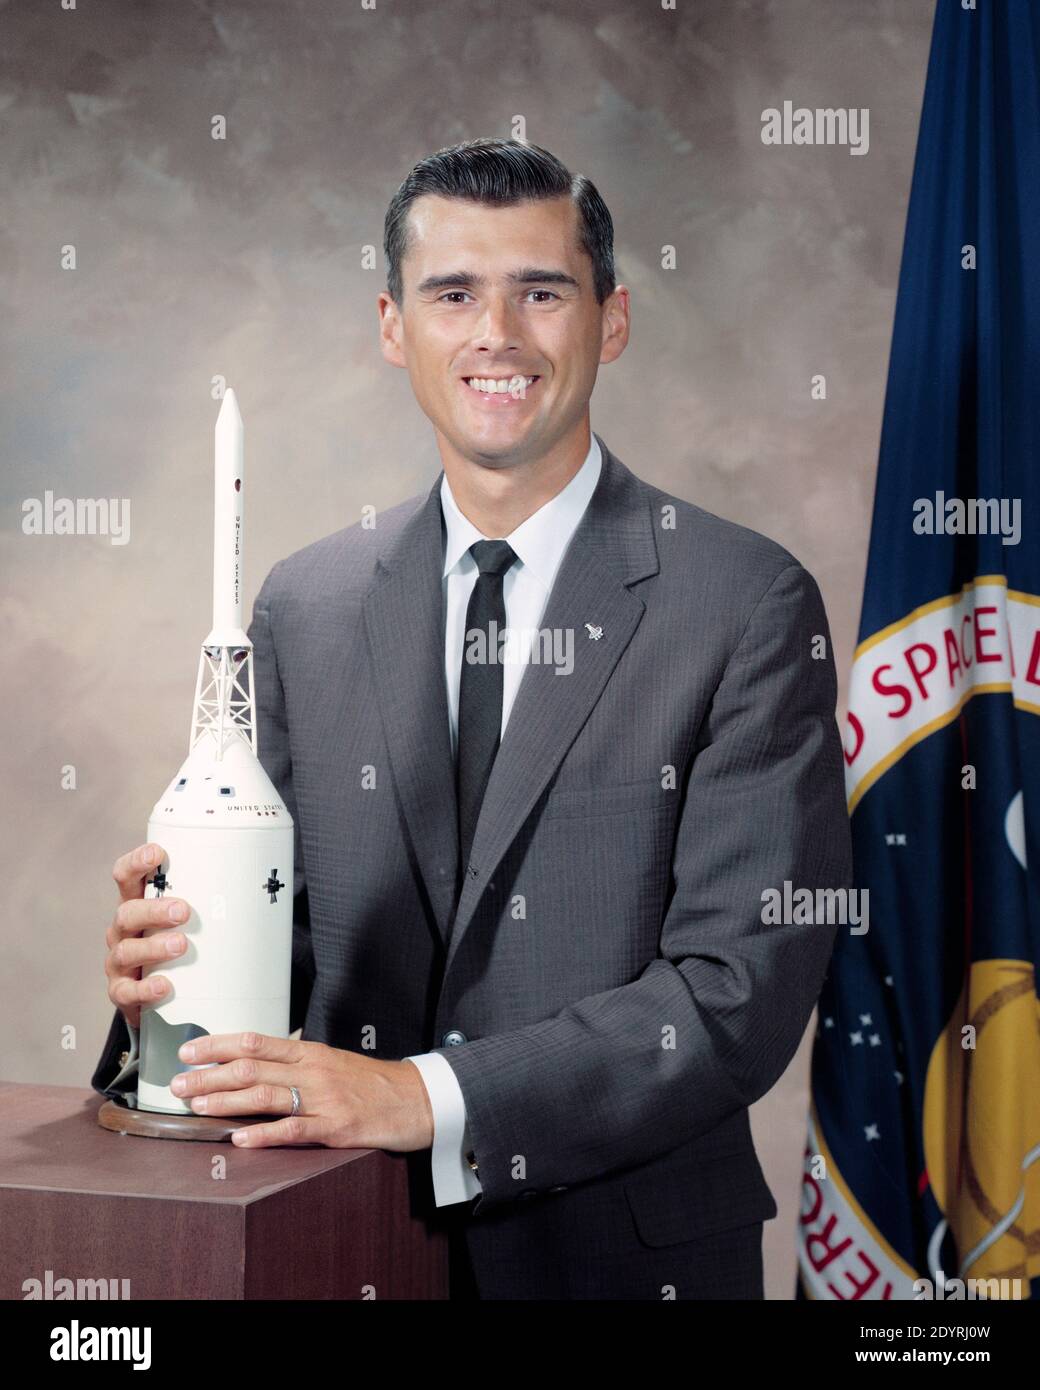 Roger Bruce Chaffee (1935 – 27 de enero de 1967) oficial naval y aviador estadounidense, ingeniero aeronáutico y astronauta de la NASA en el programa Apollo. Foto de stock